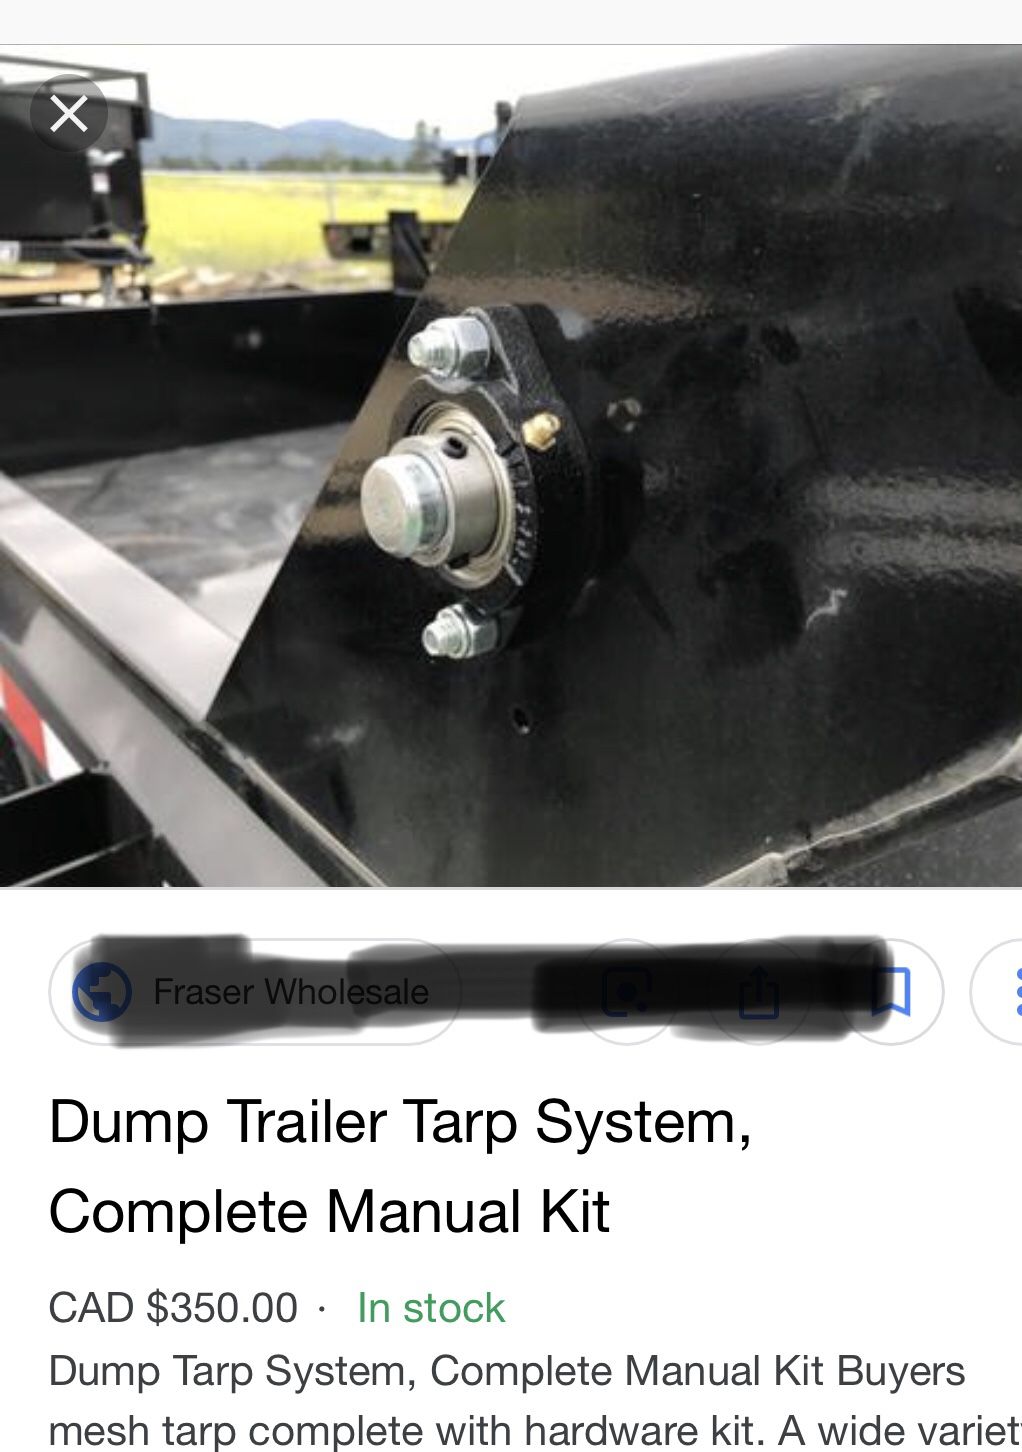 Dump trailer cover tarp kit.